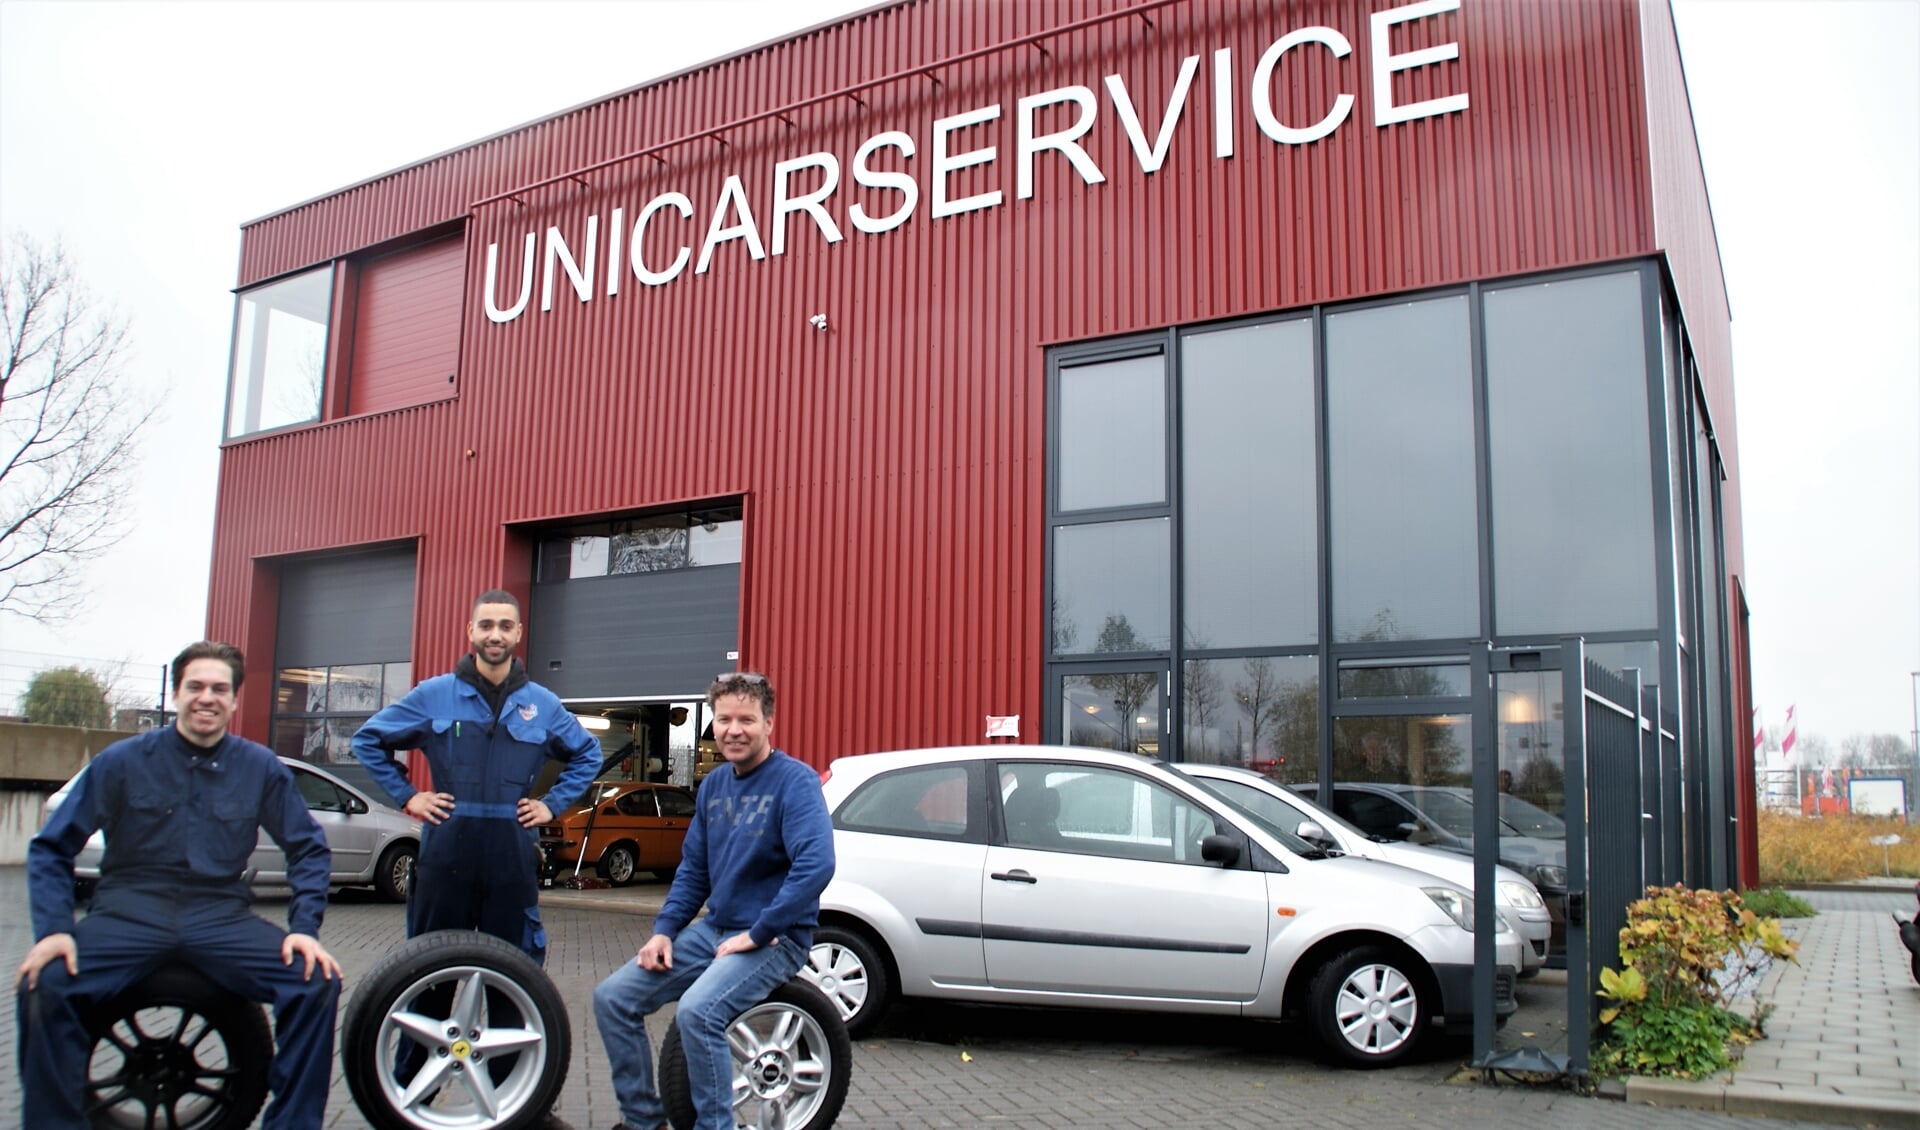 Het team van Unicar Service,
met van links naar rechts Bram, Hicham en Mark.